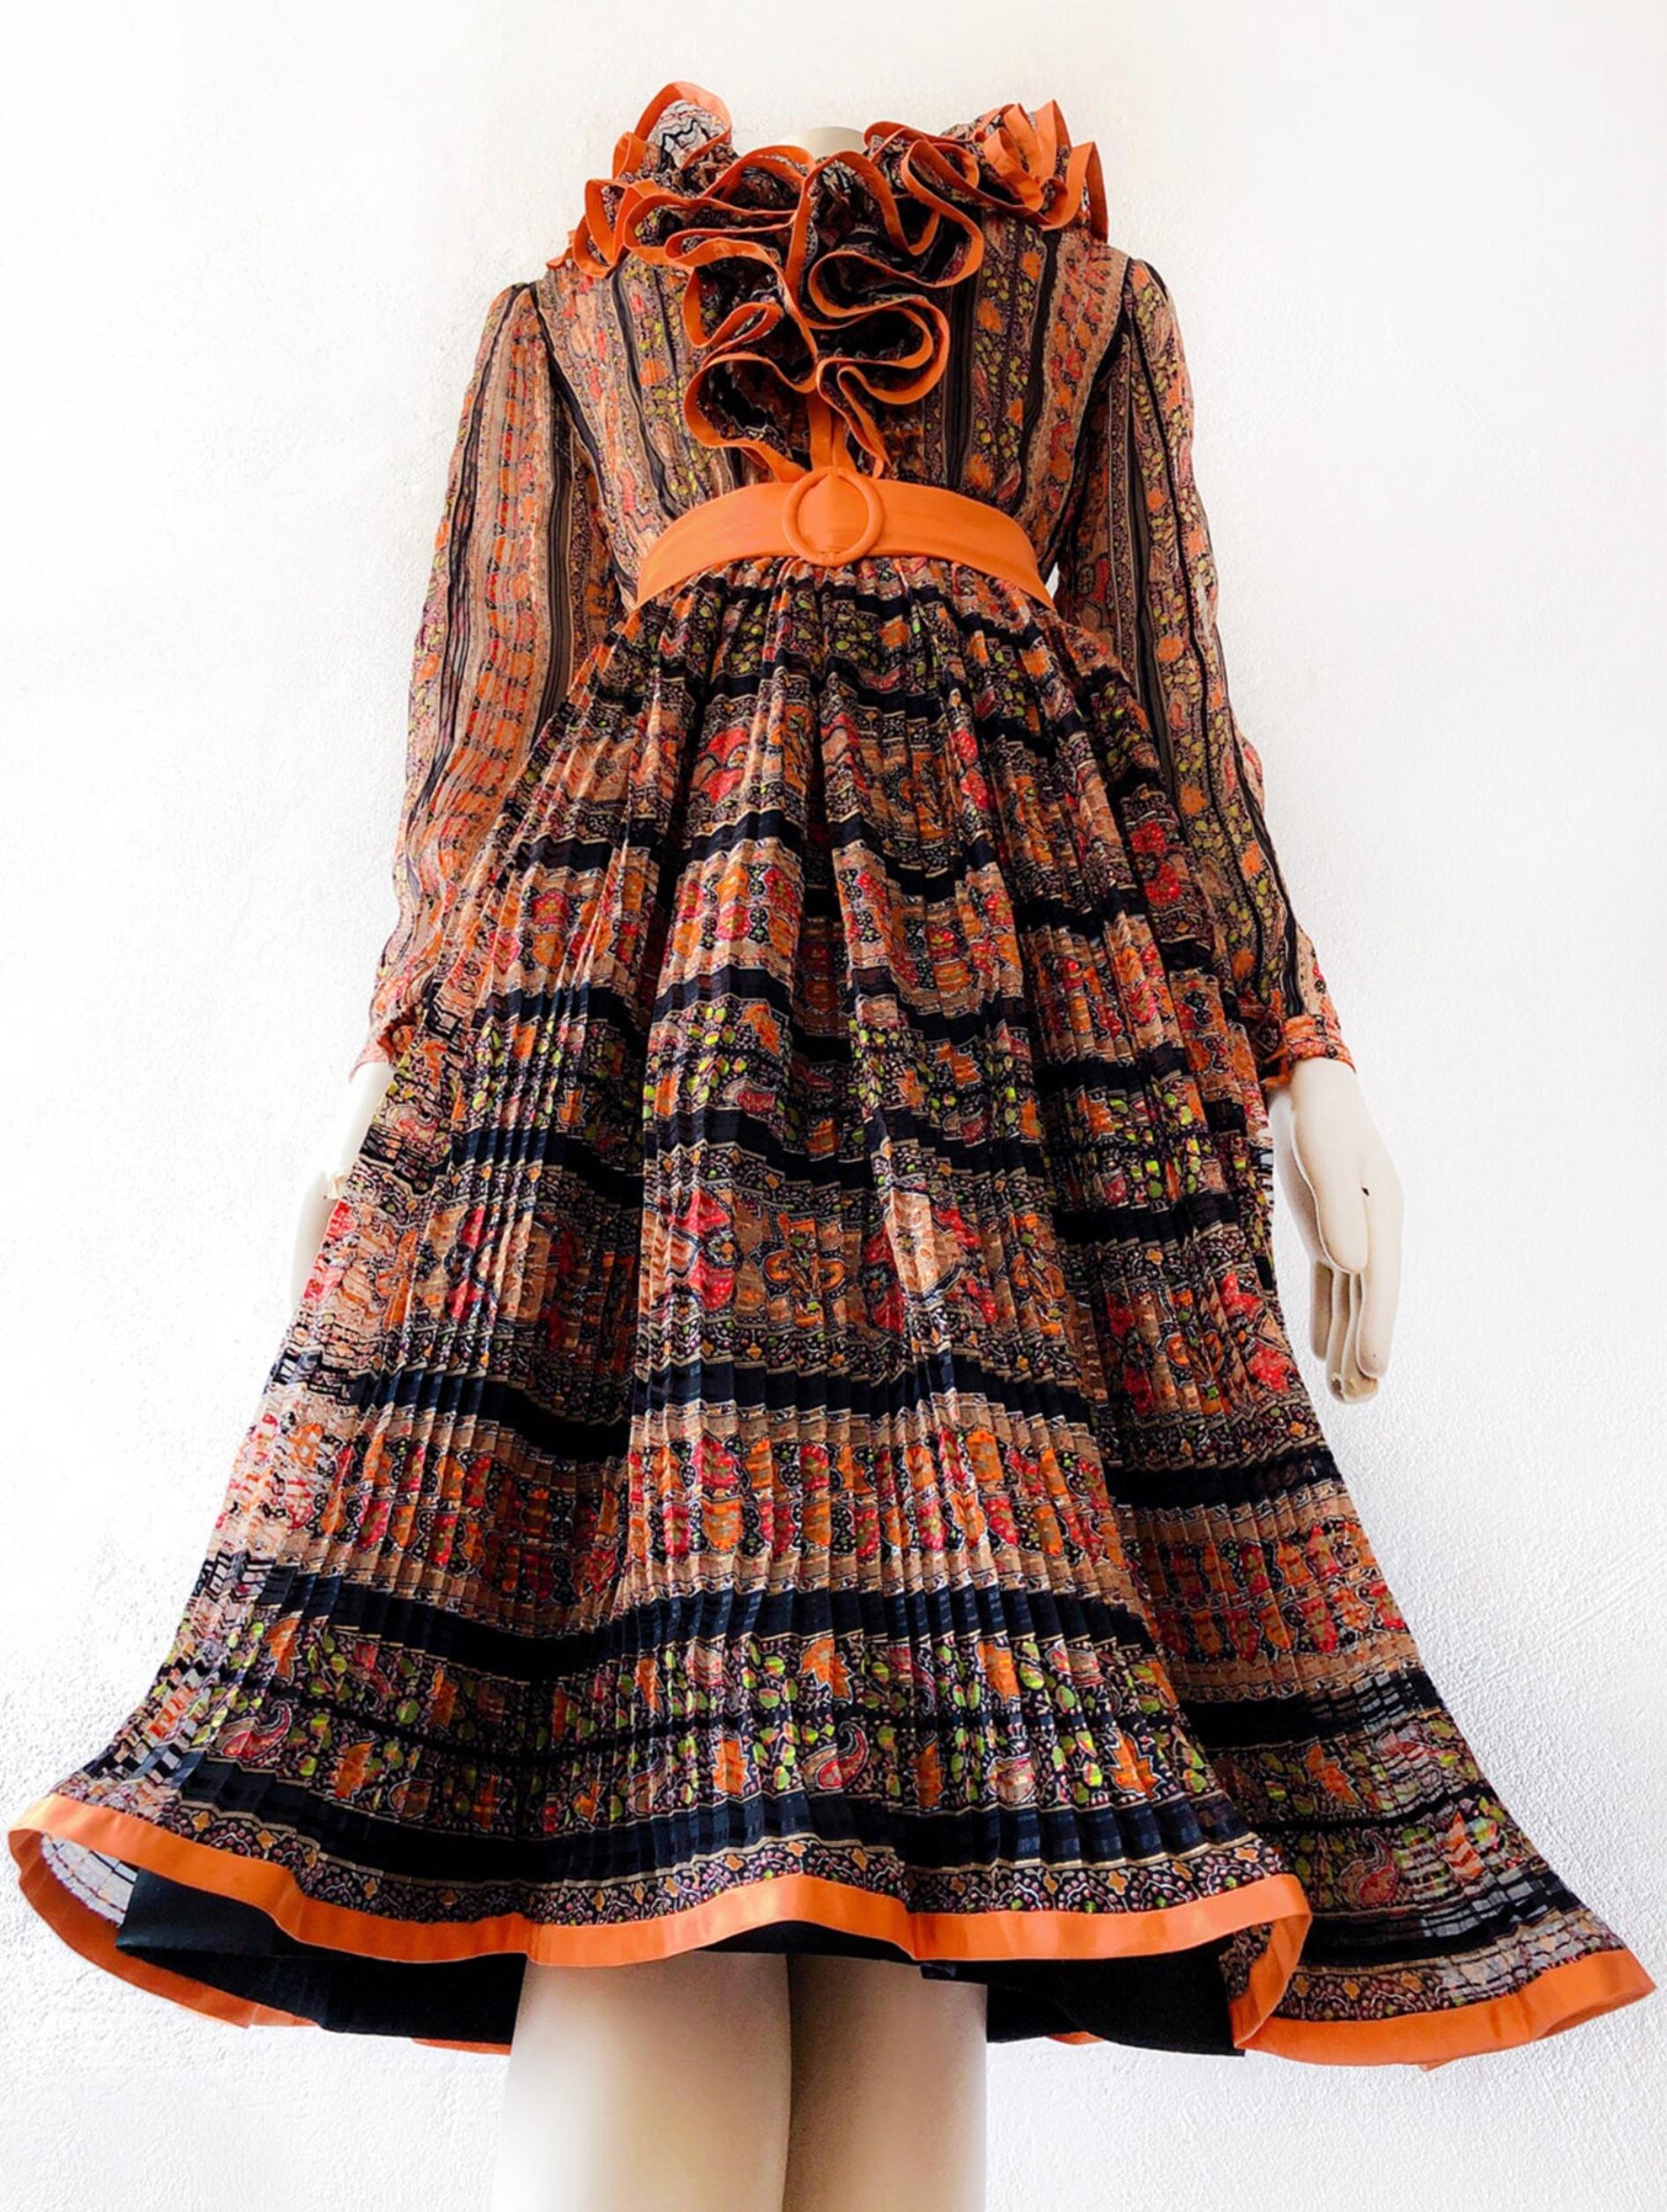 C'est la plus belle des robes !
Il est fait d'un très beau tissu de soie délicat et de couleurs saturées très fortes, la forme est typique des années 1970.  La construction est si bien faite et il y a tant de détails magnifiques faits à la main. La